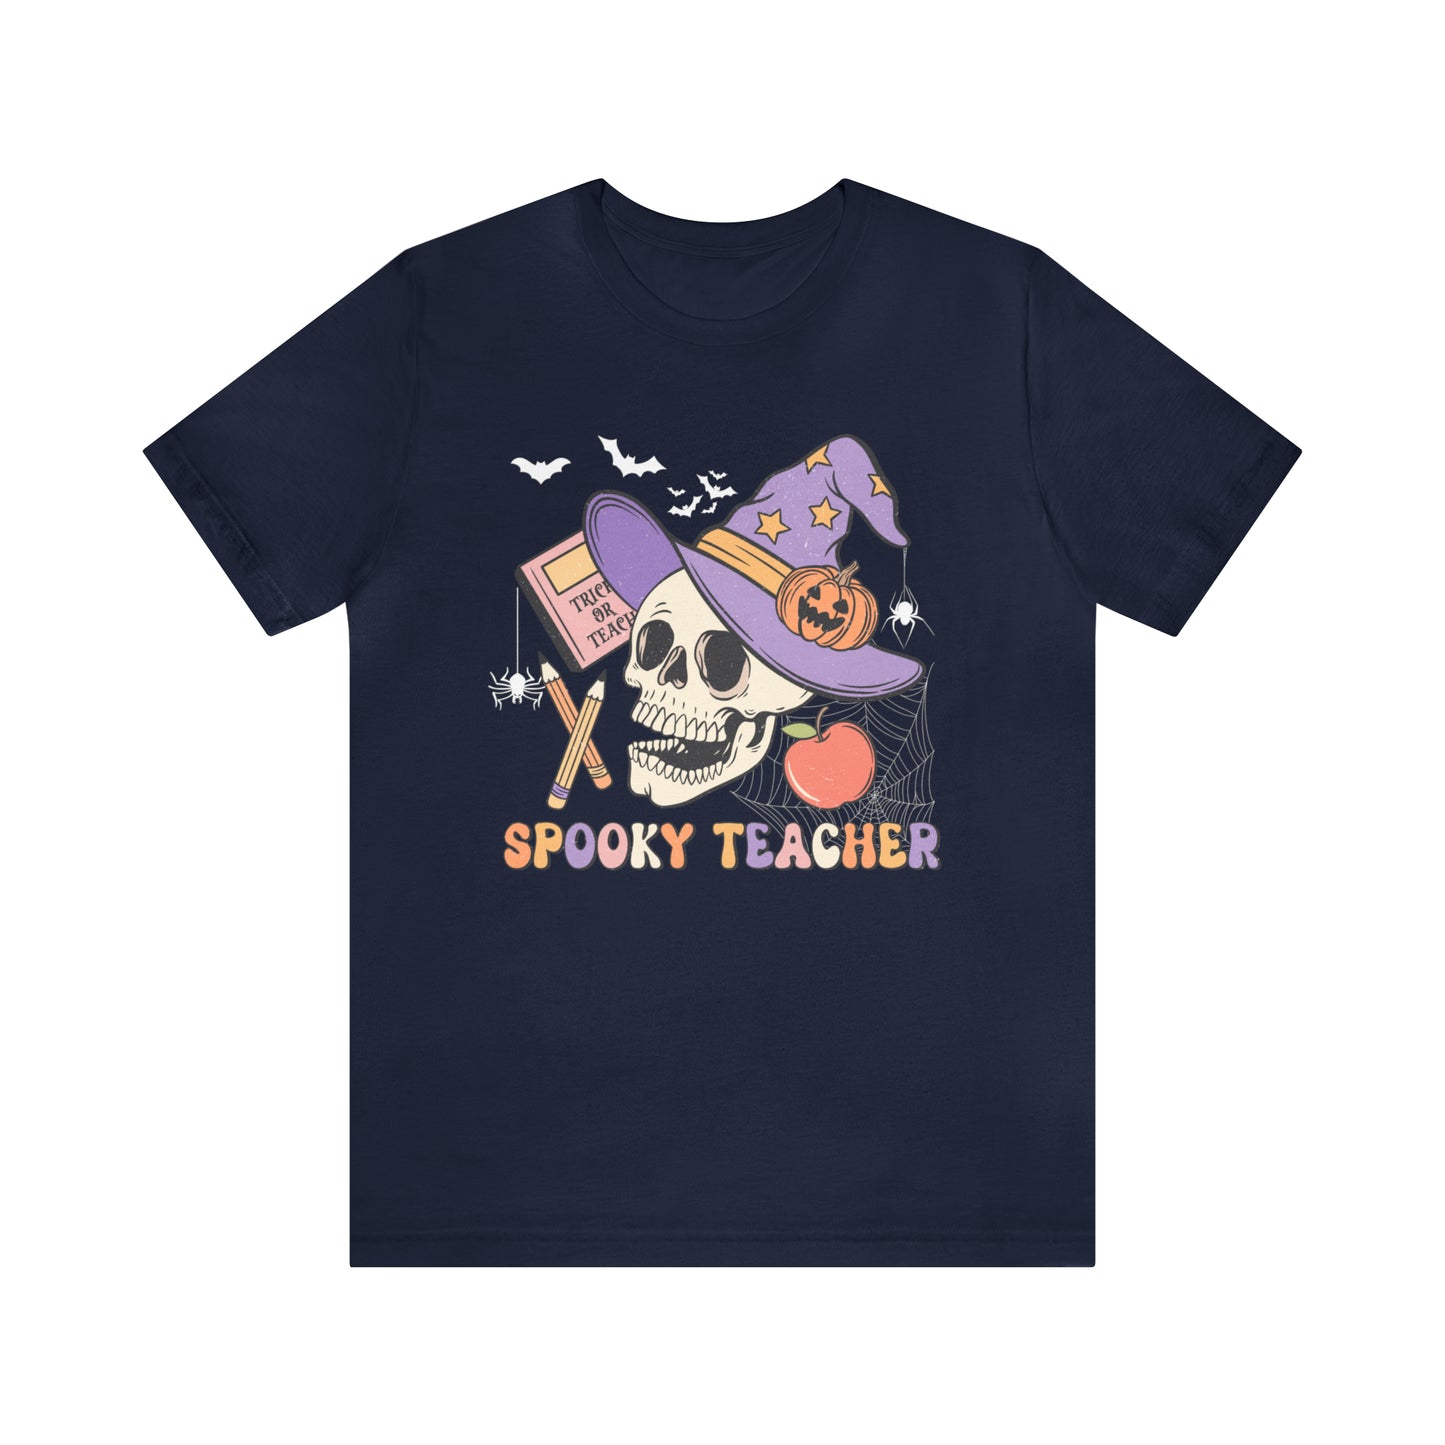 Teacher Shirt, Trick Or Teach Shirt, Spooky Teacher, Teacher Halloween Shirt, Teaching My Boos, Fall Teacher Shirt, T678